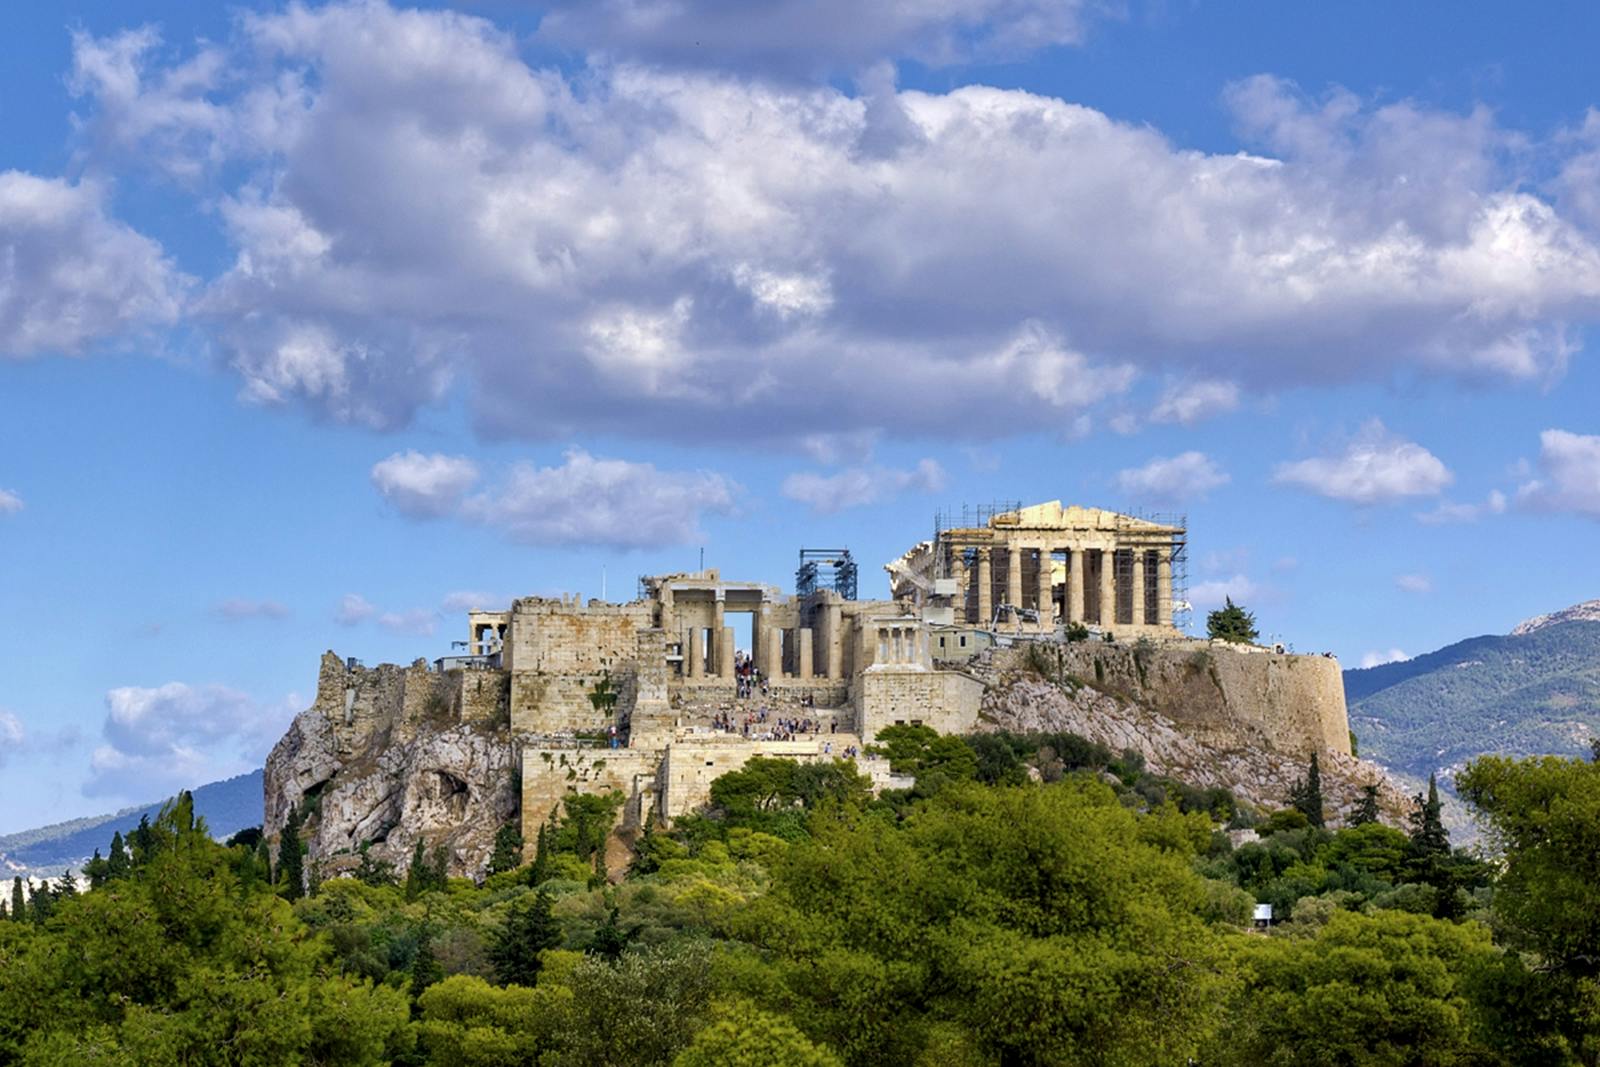 Visite virtuelle de la colline de l'Acropole depuis chez vous